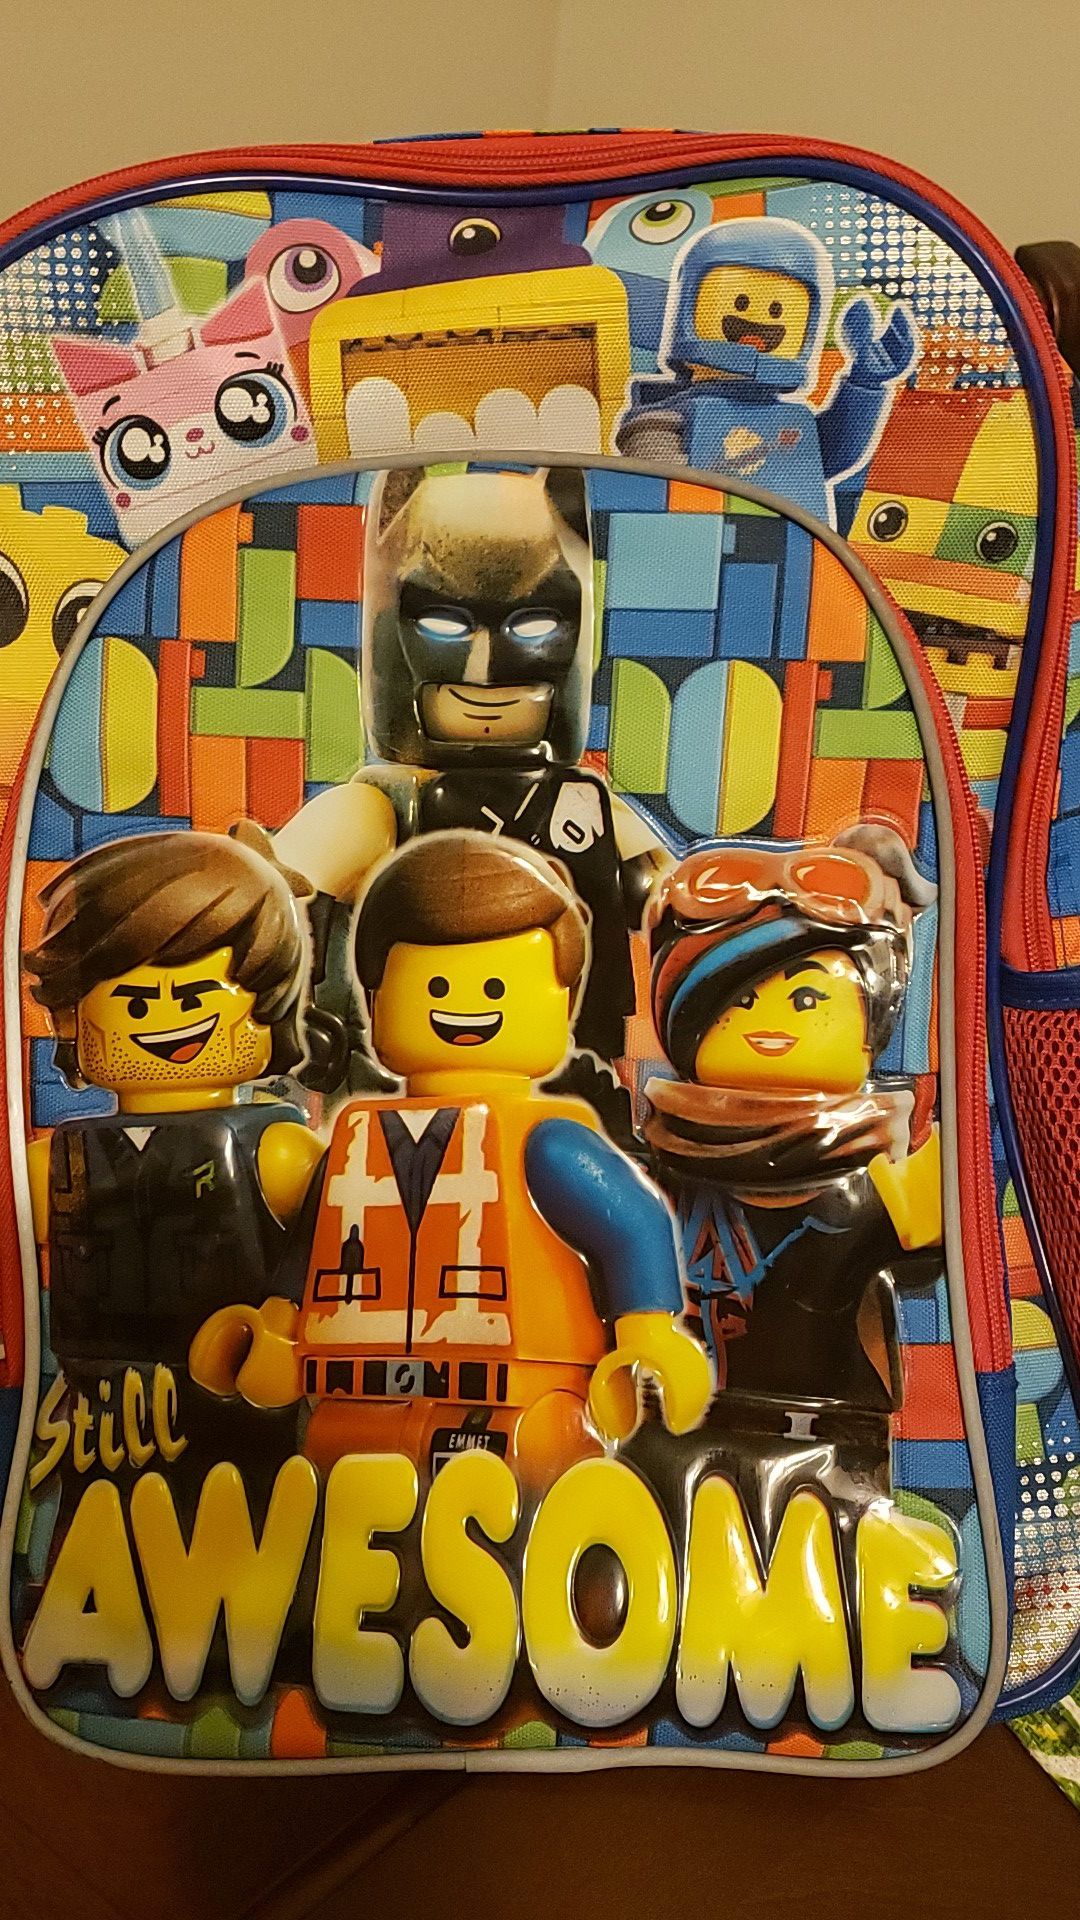 Lego Movie bacpack $15